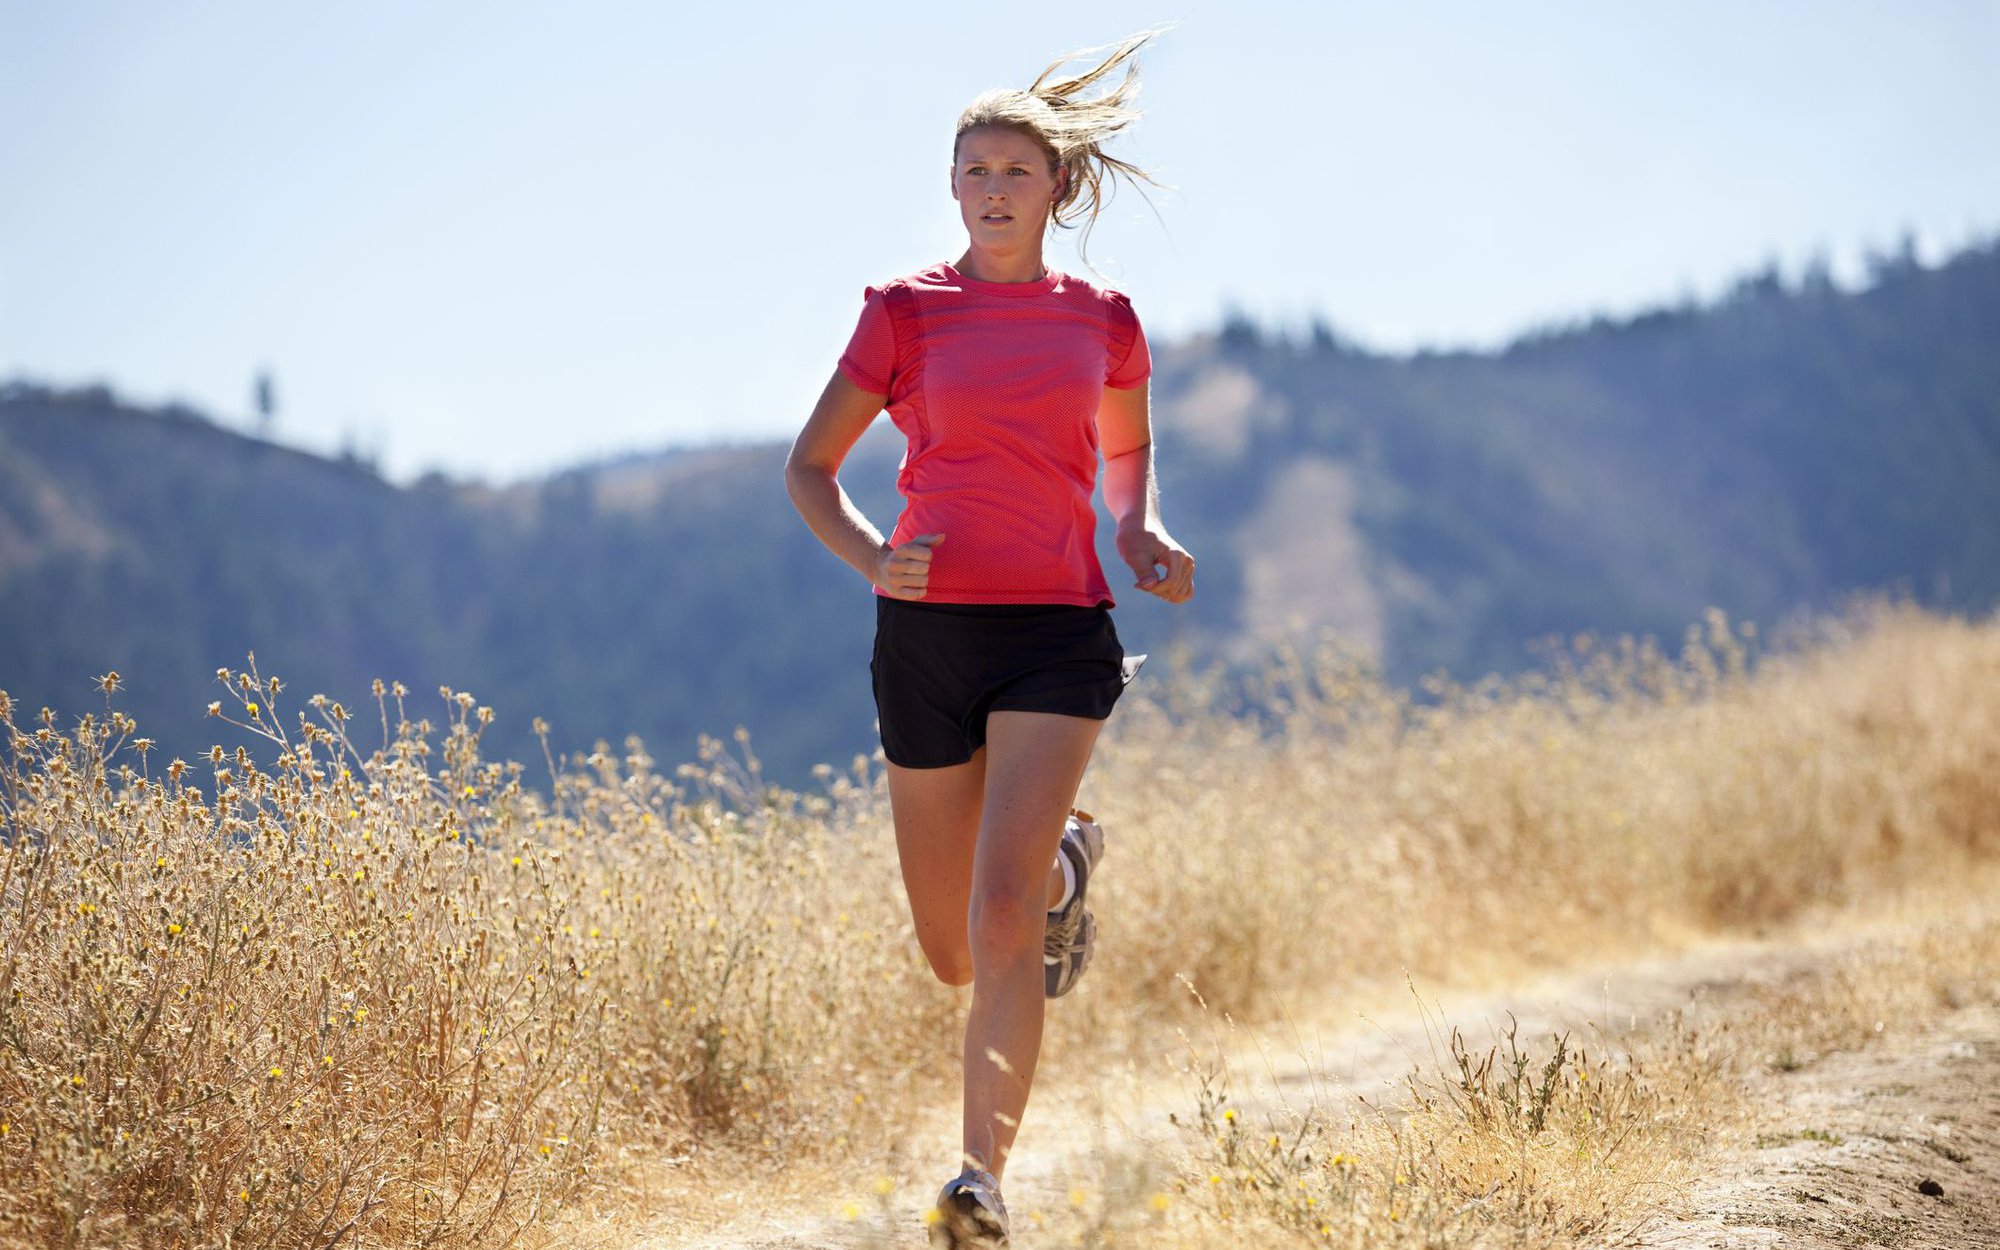 6 cách tập thể dục an toàn trong mùa nắng nóng